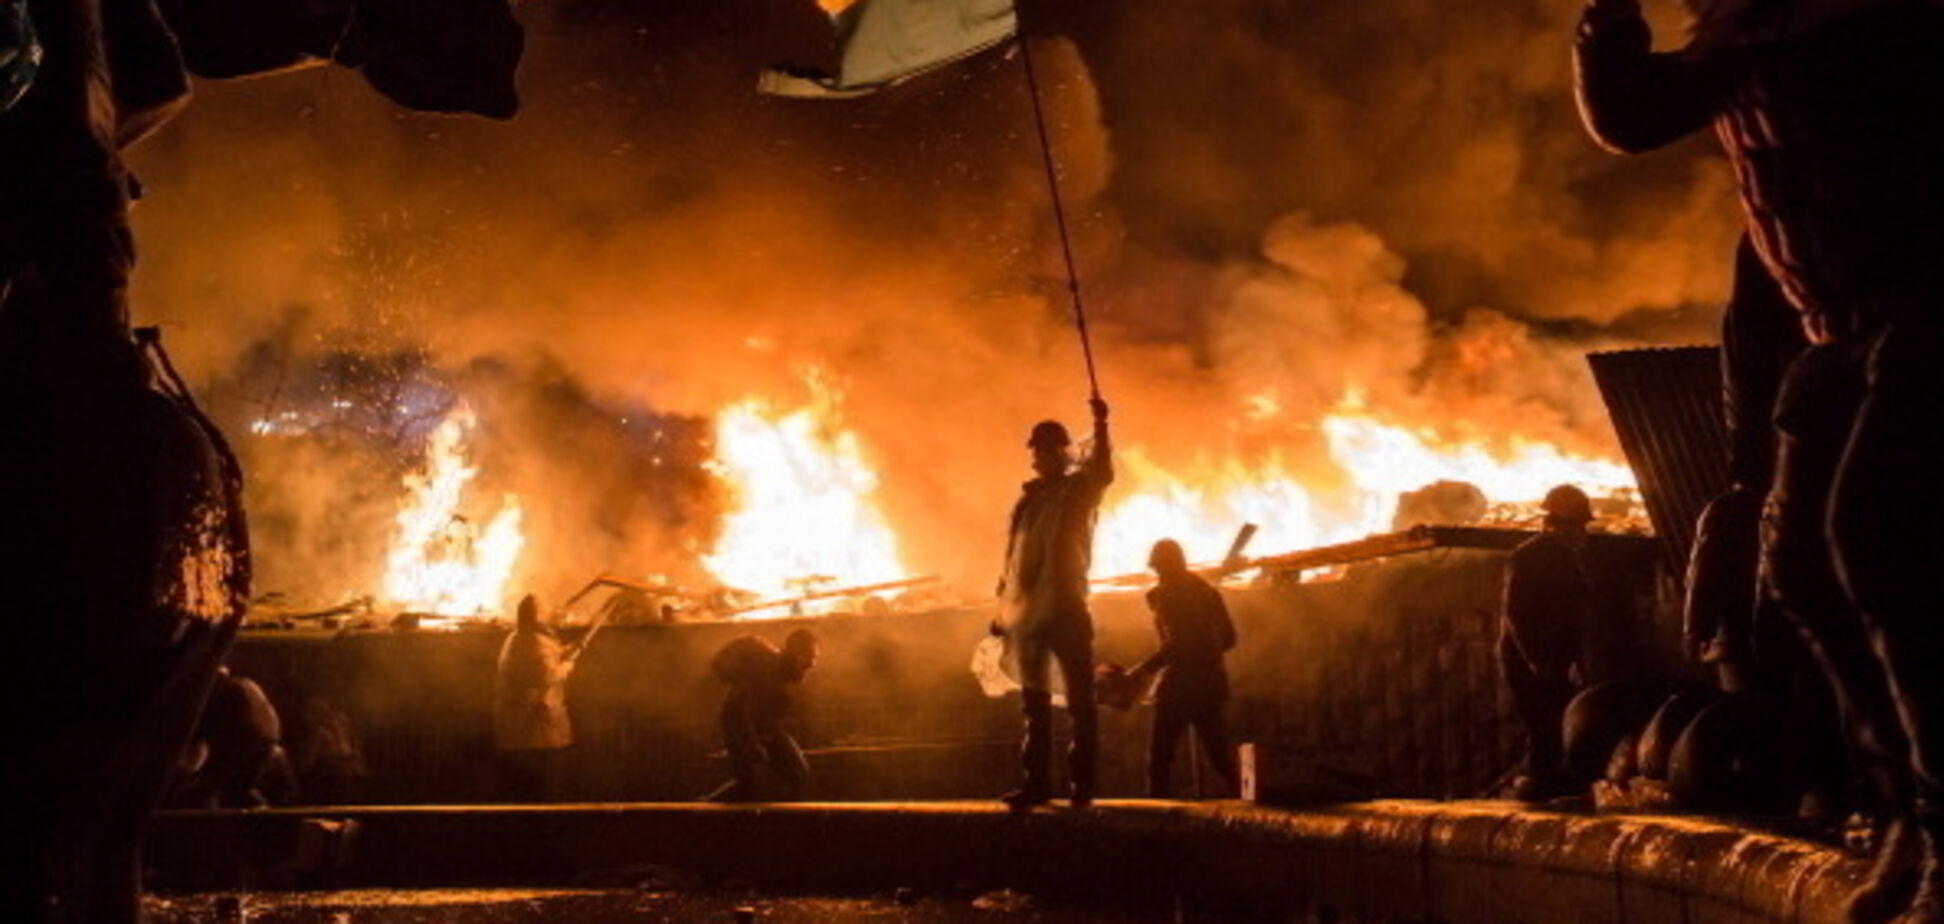 Пять лет Евромайдану и Революции Достоинства: самые мощные фото исторических дней